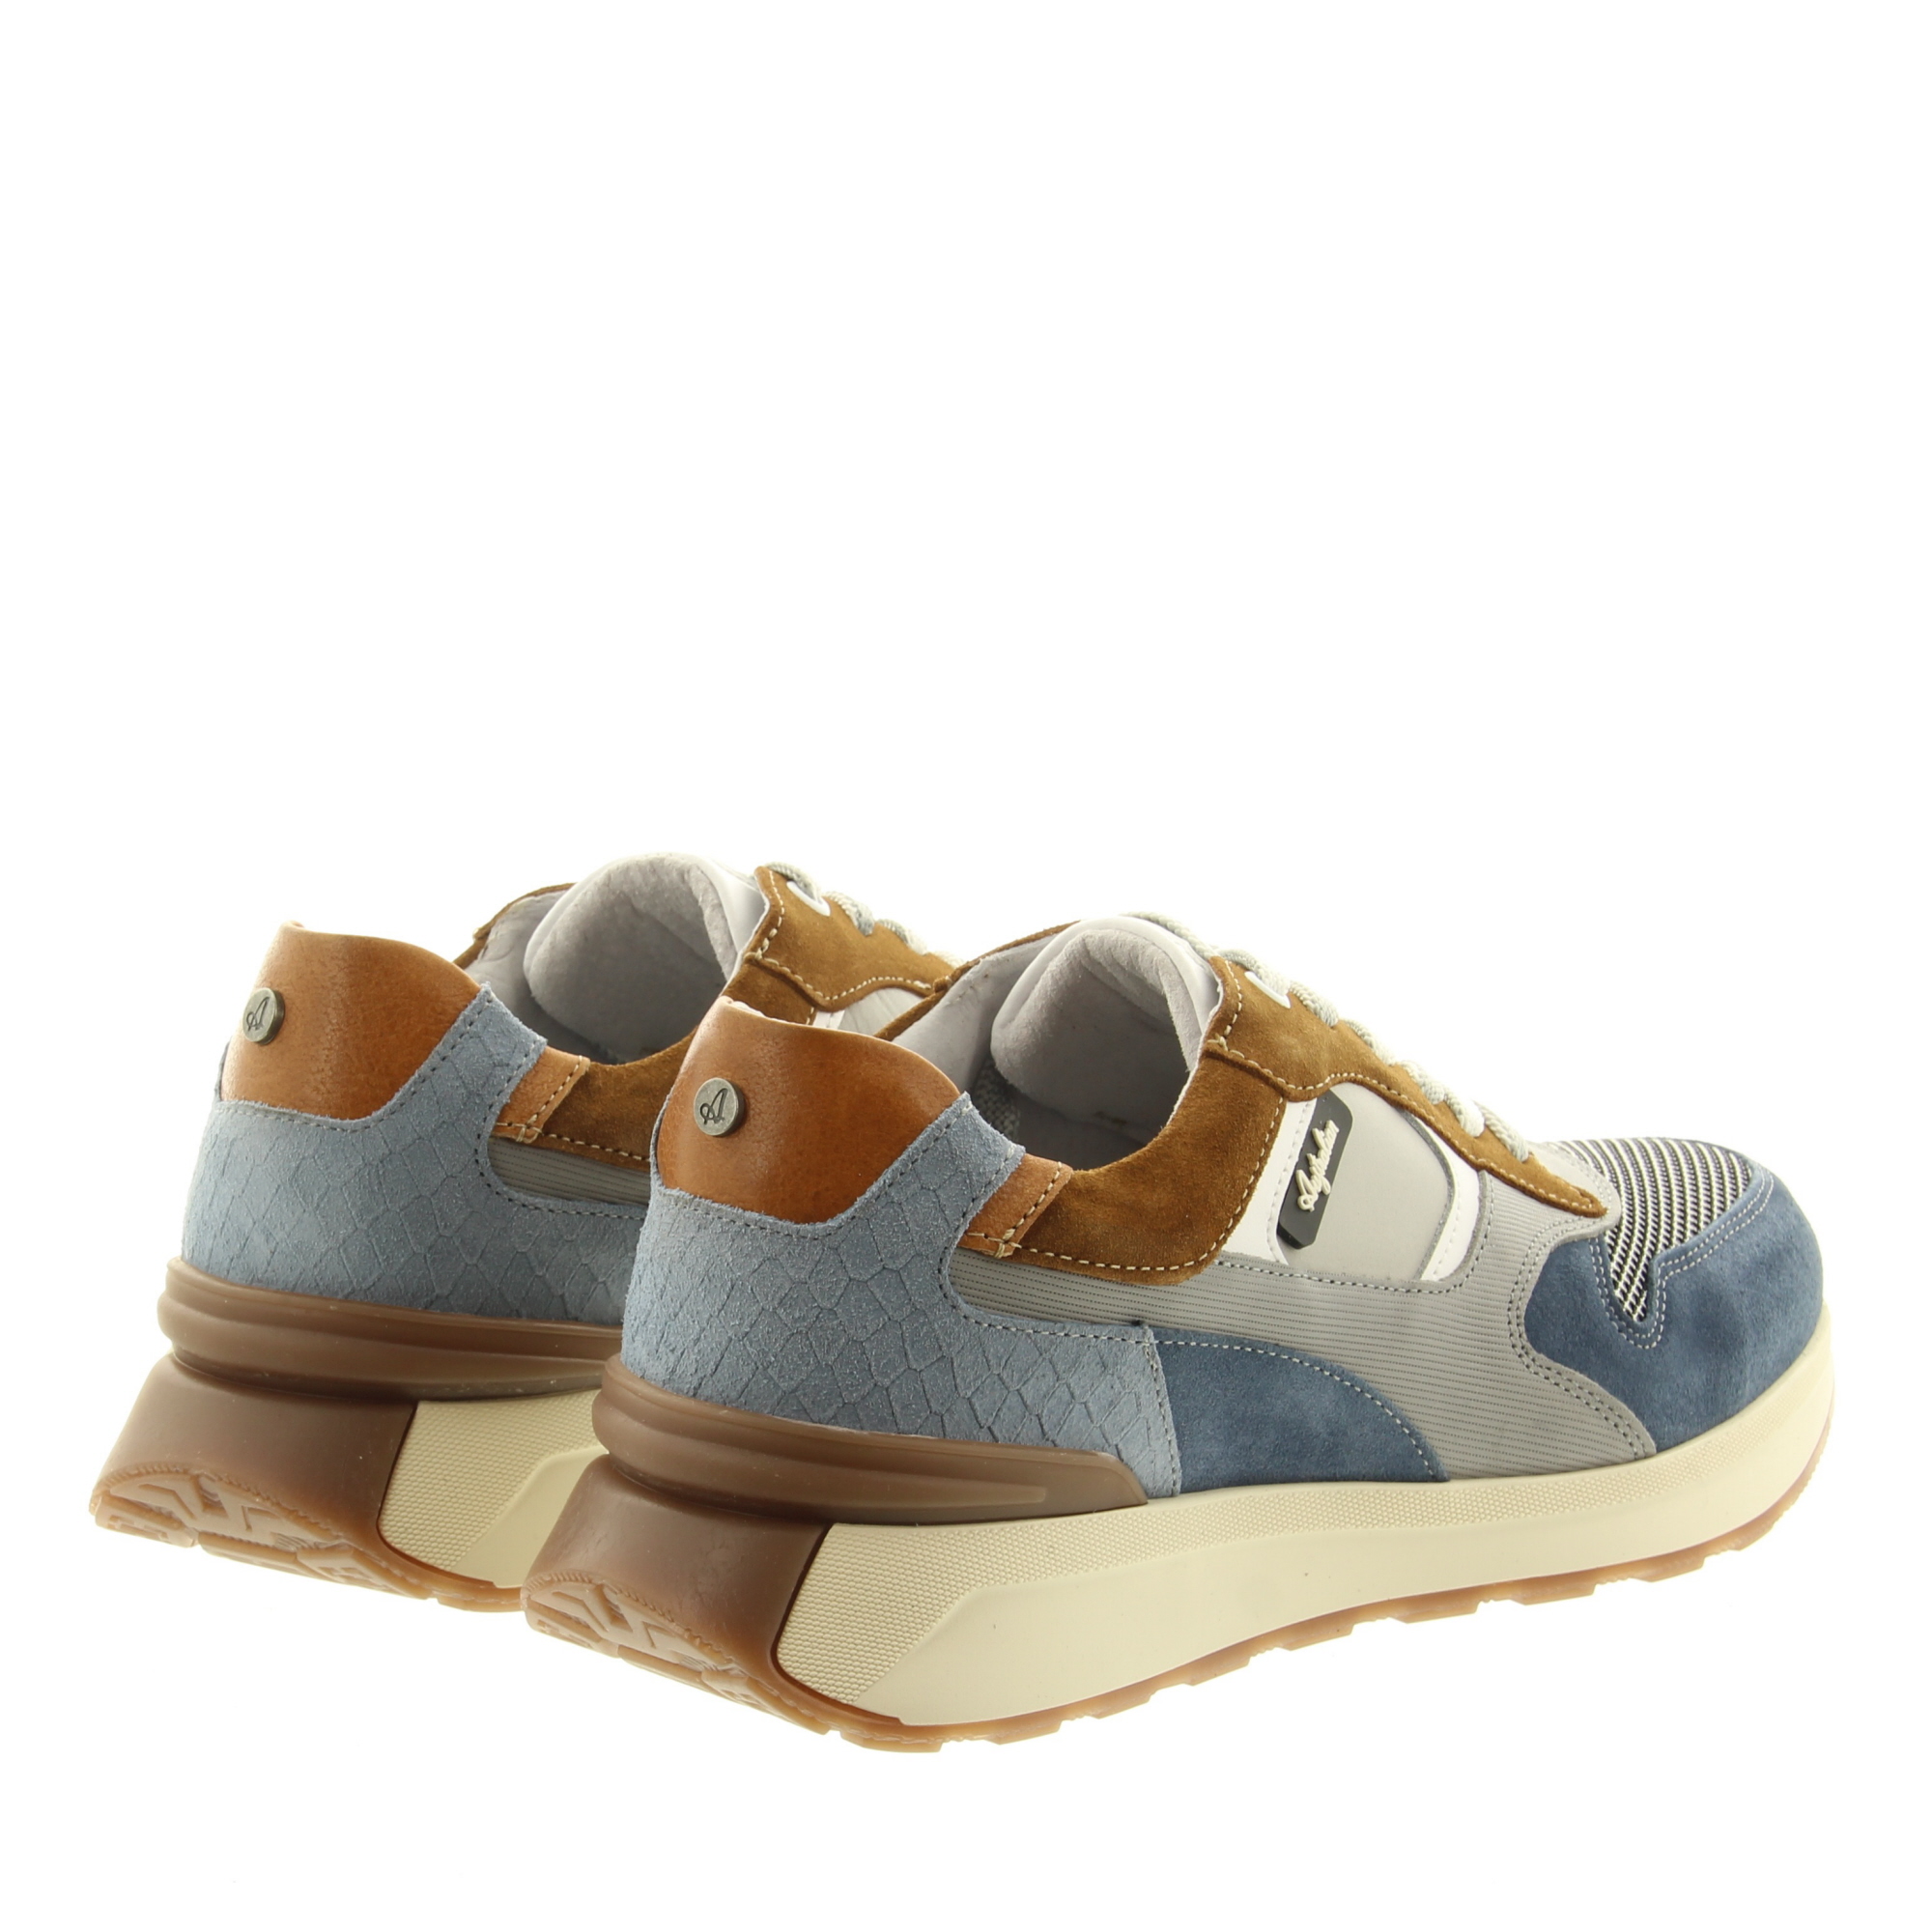 Australian Footwear Kyoto 15.1651.01 KE2 Grey-Blue Combi